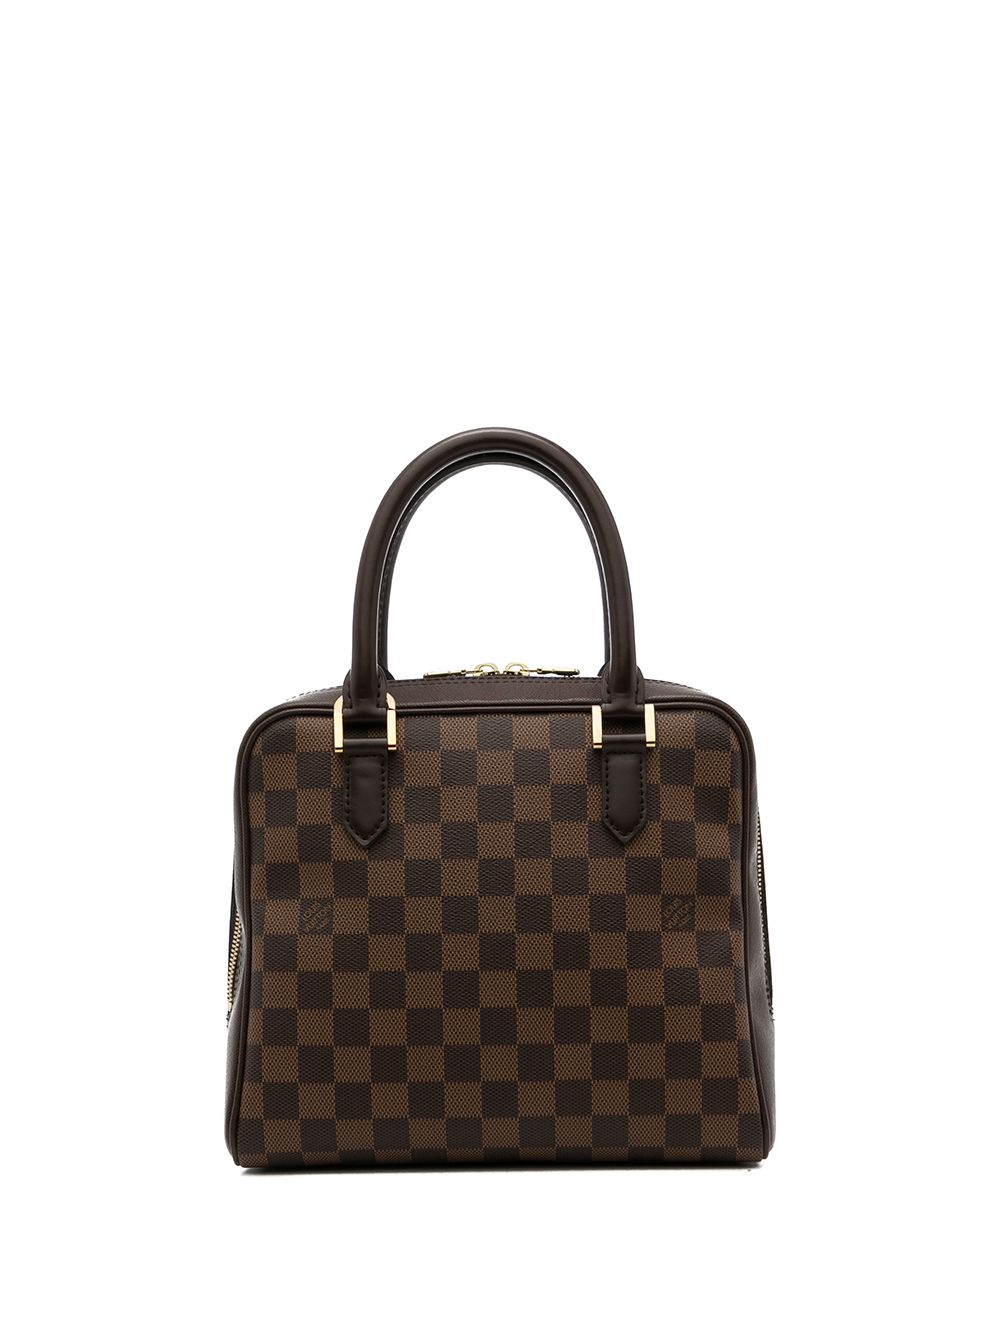 Louis Vuitton 2001 Brera handbag  Rent Louis Vuitton Handbags for